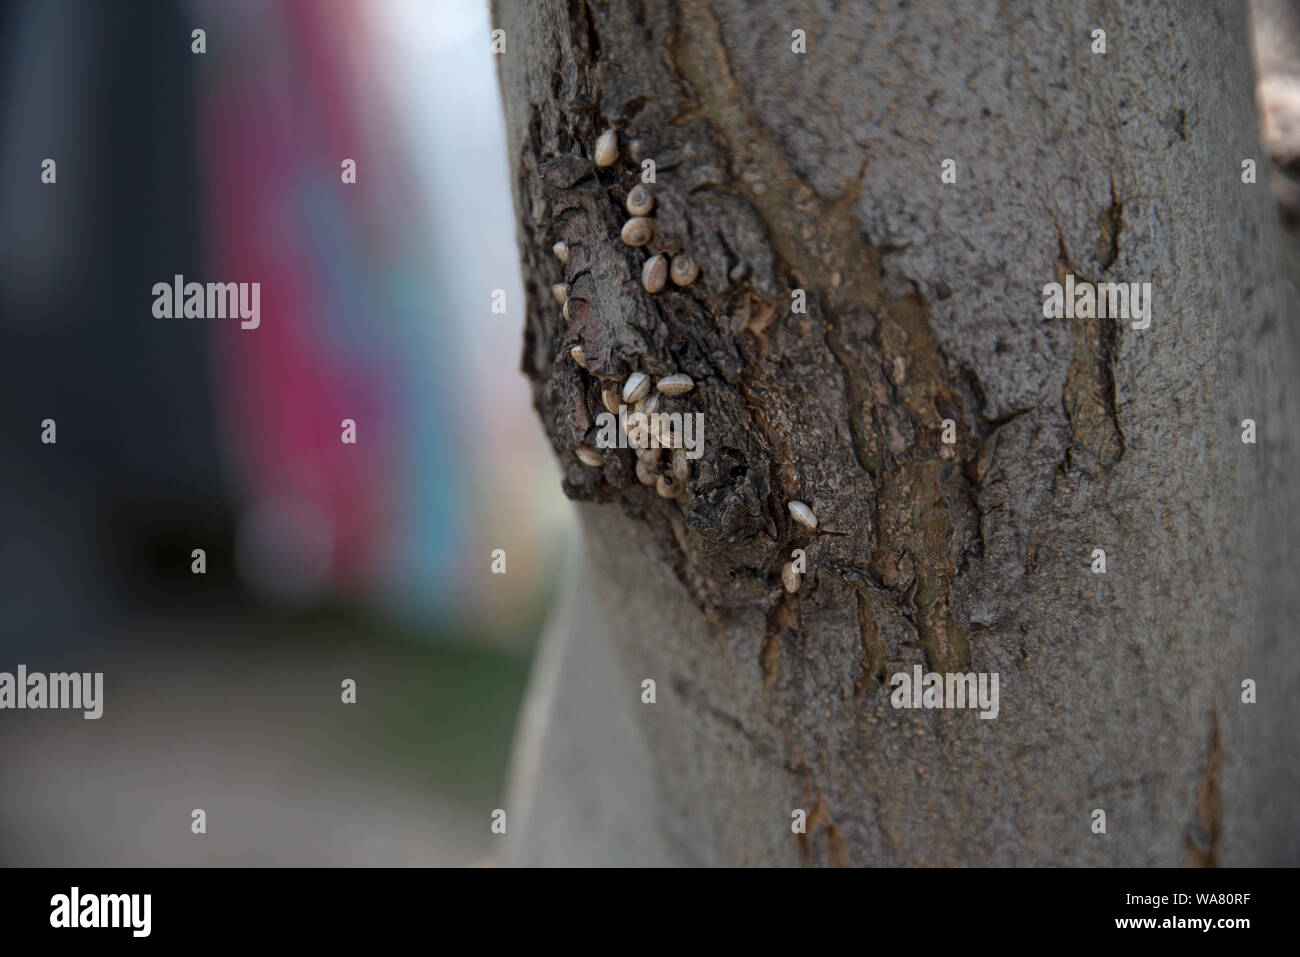 kleine Schnecken, die sich an einem Baum in Istrien, Kanegra an der Bucht zwischen Kroatien und Slowenien angesammelt haben Stock Photo